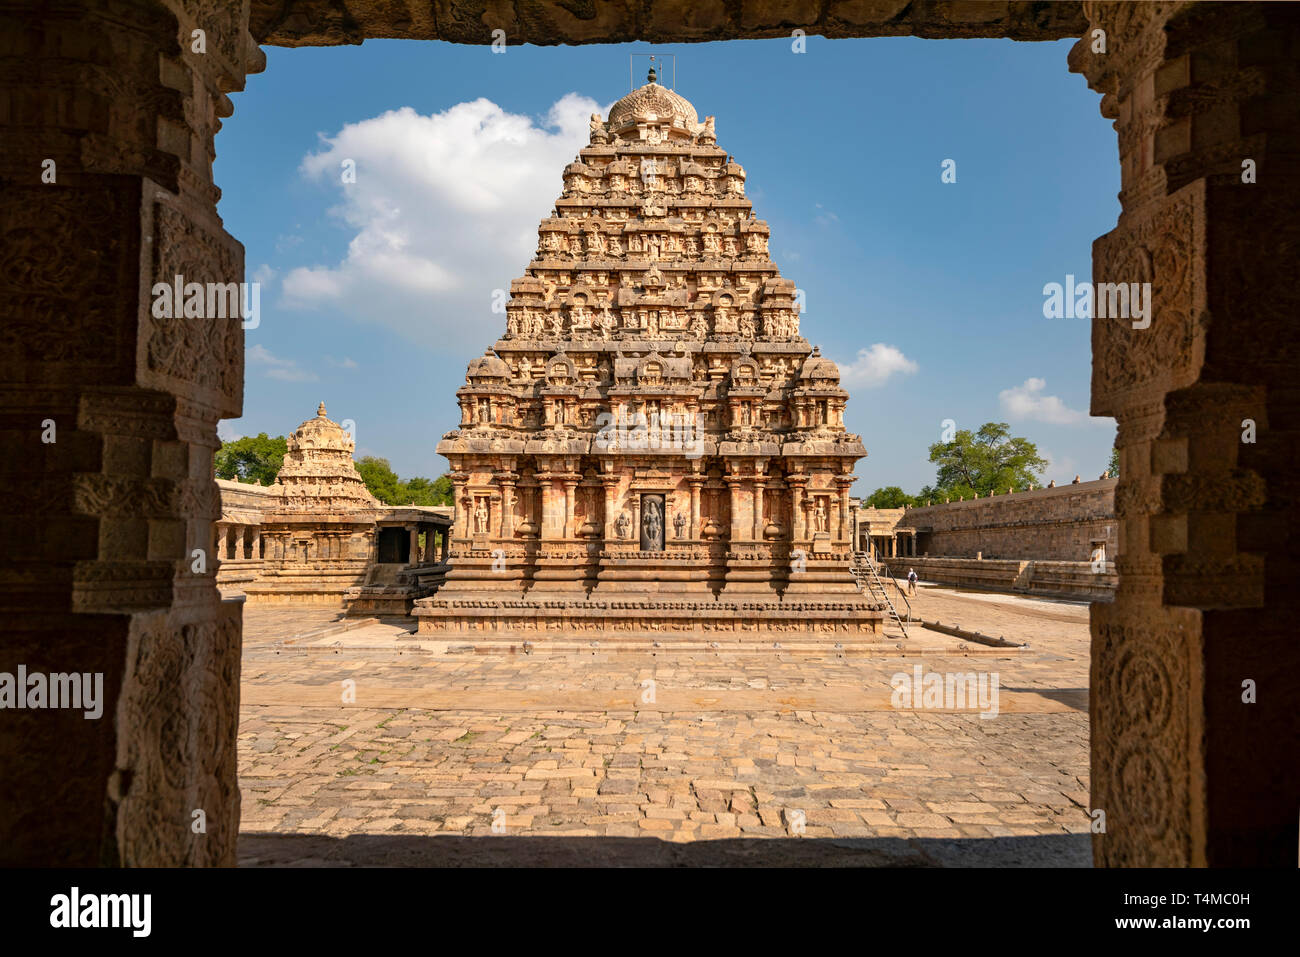 Horizontal view of the Airavatesvara Temple in Darasuram or Dharasuram, India. Stock Photo